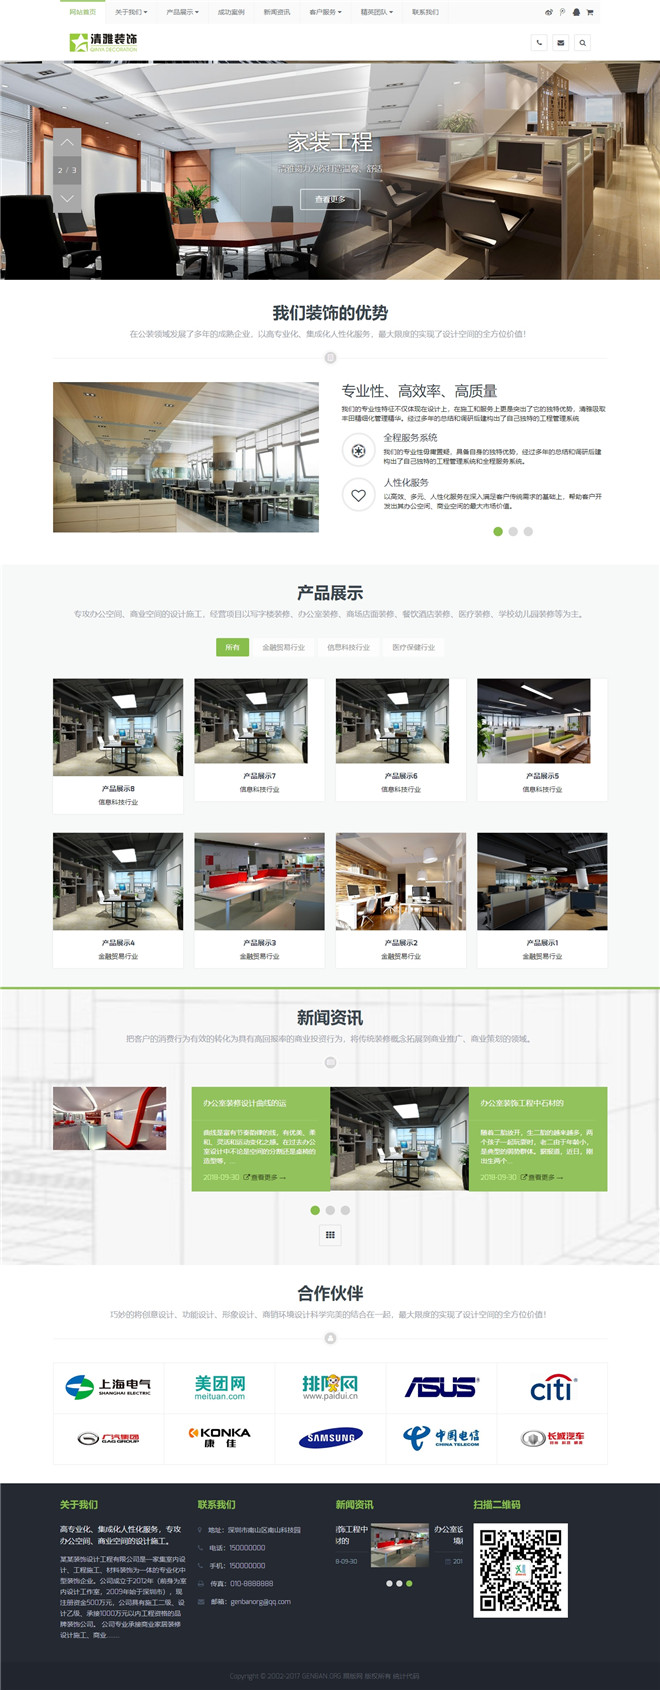 装饰商业空间设计施工类网站模板截图